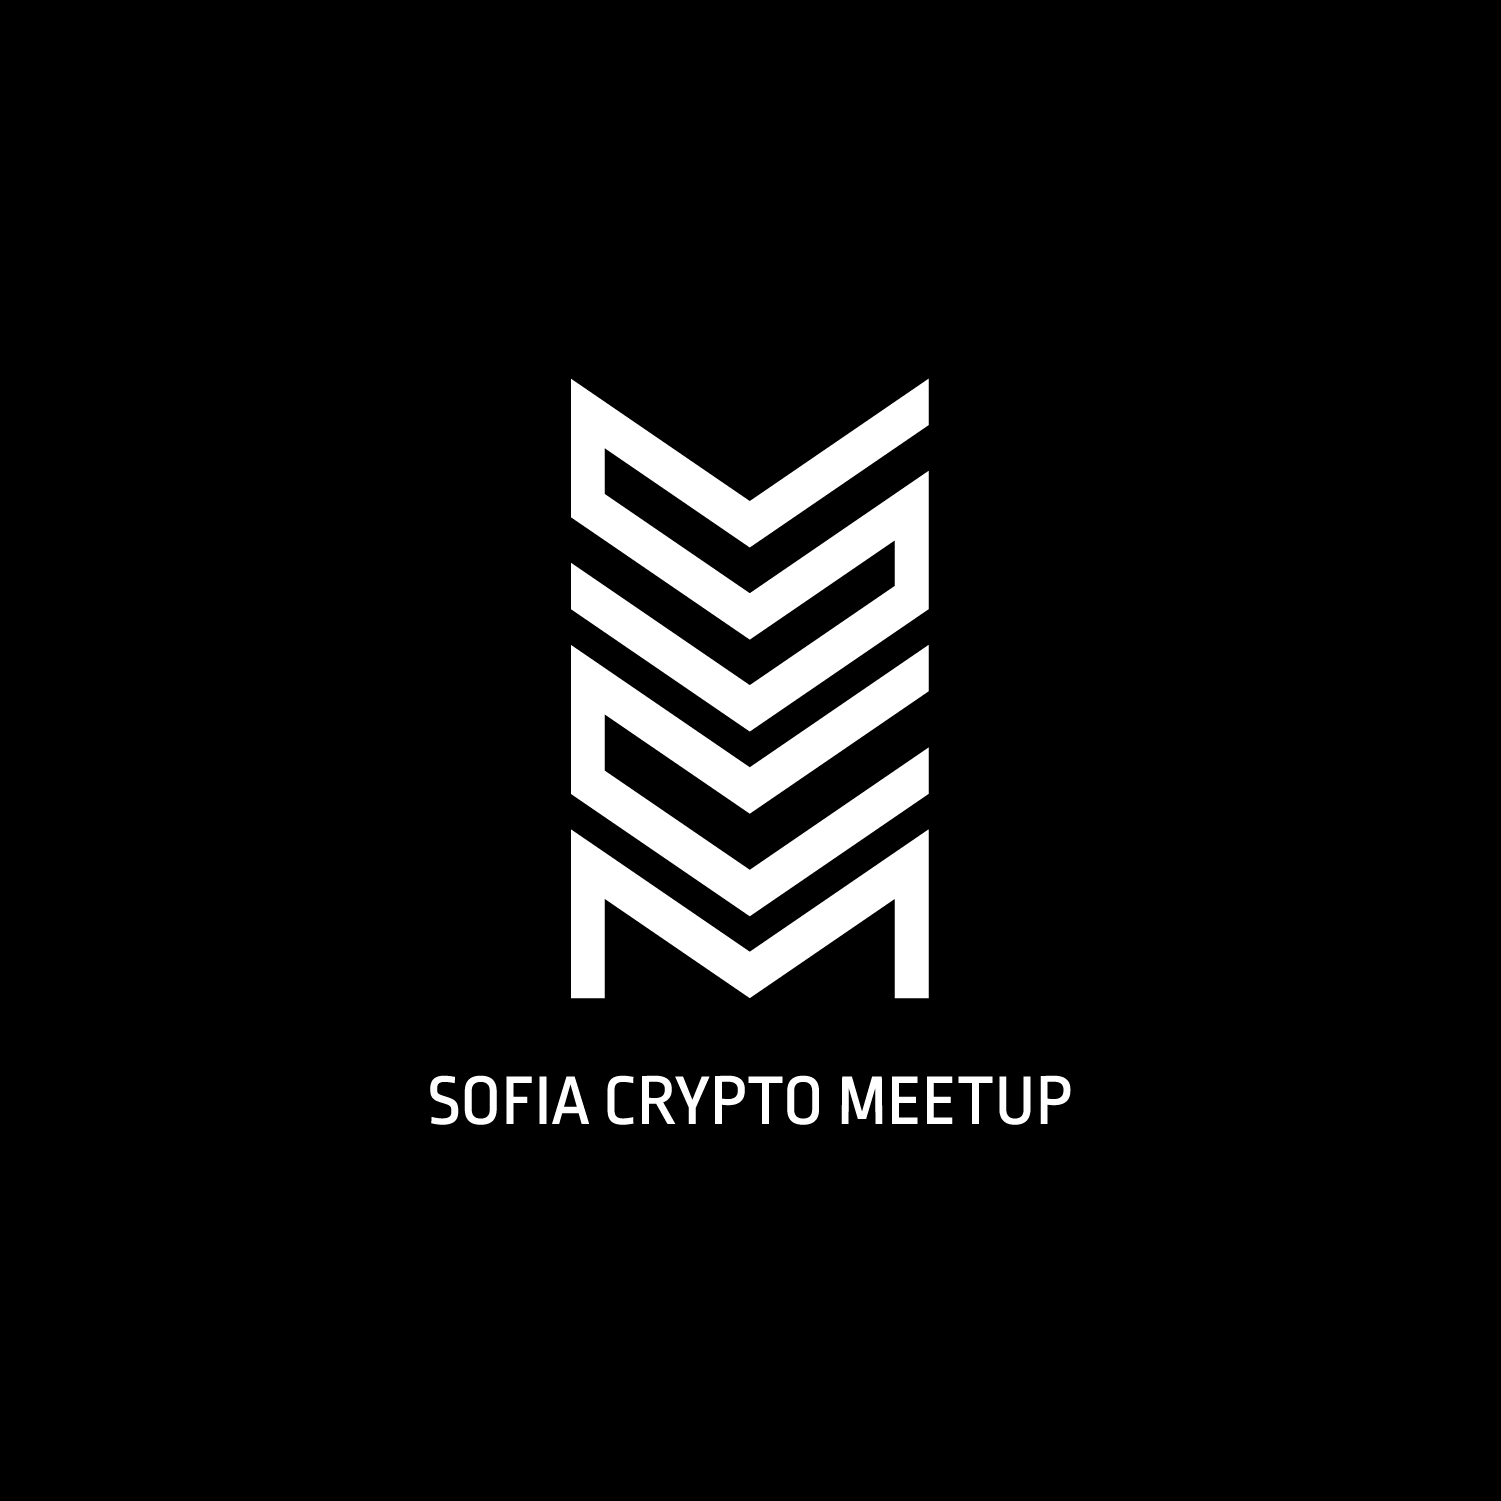 Sofia Crypto Meetup